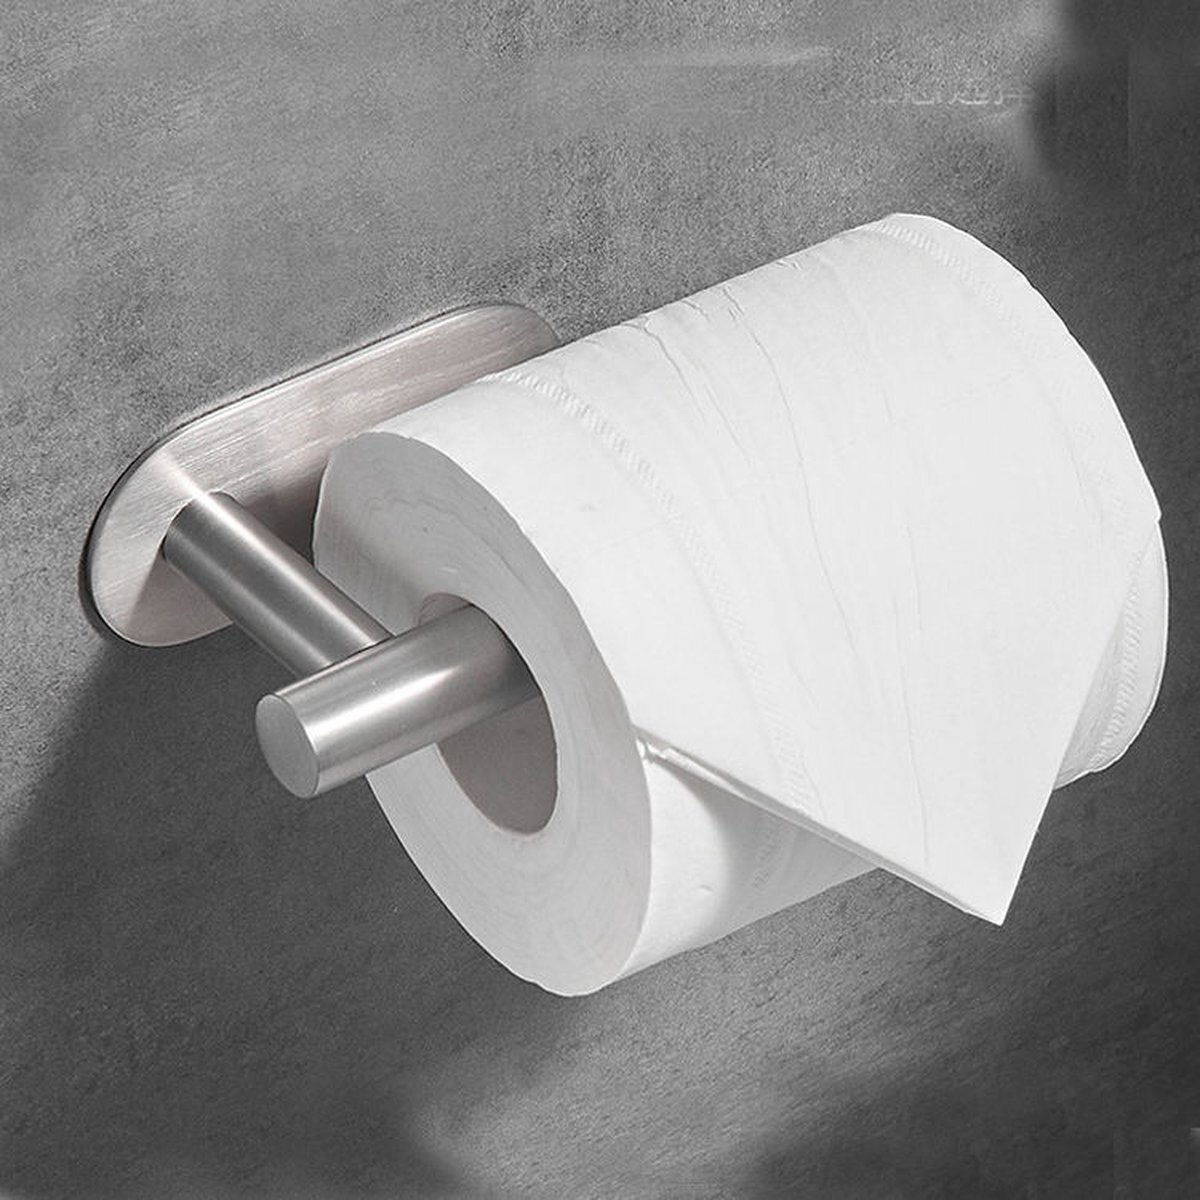 Repus - Zelfklevende Toiletpapier rol houder - Wc papier houder - Zonder te boren - Rvs - Zilver